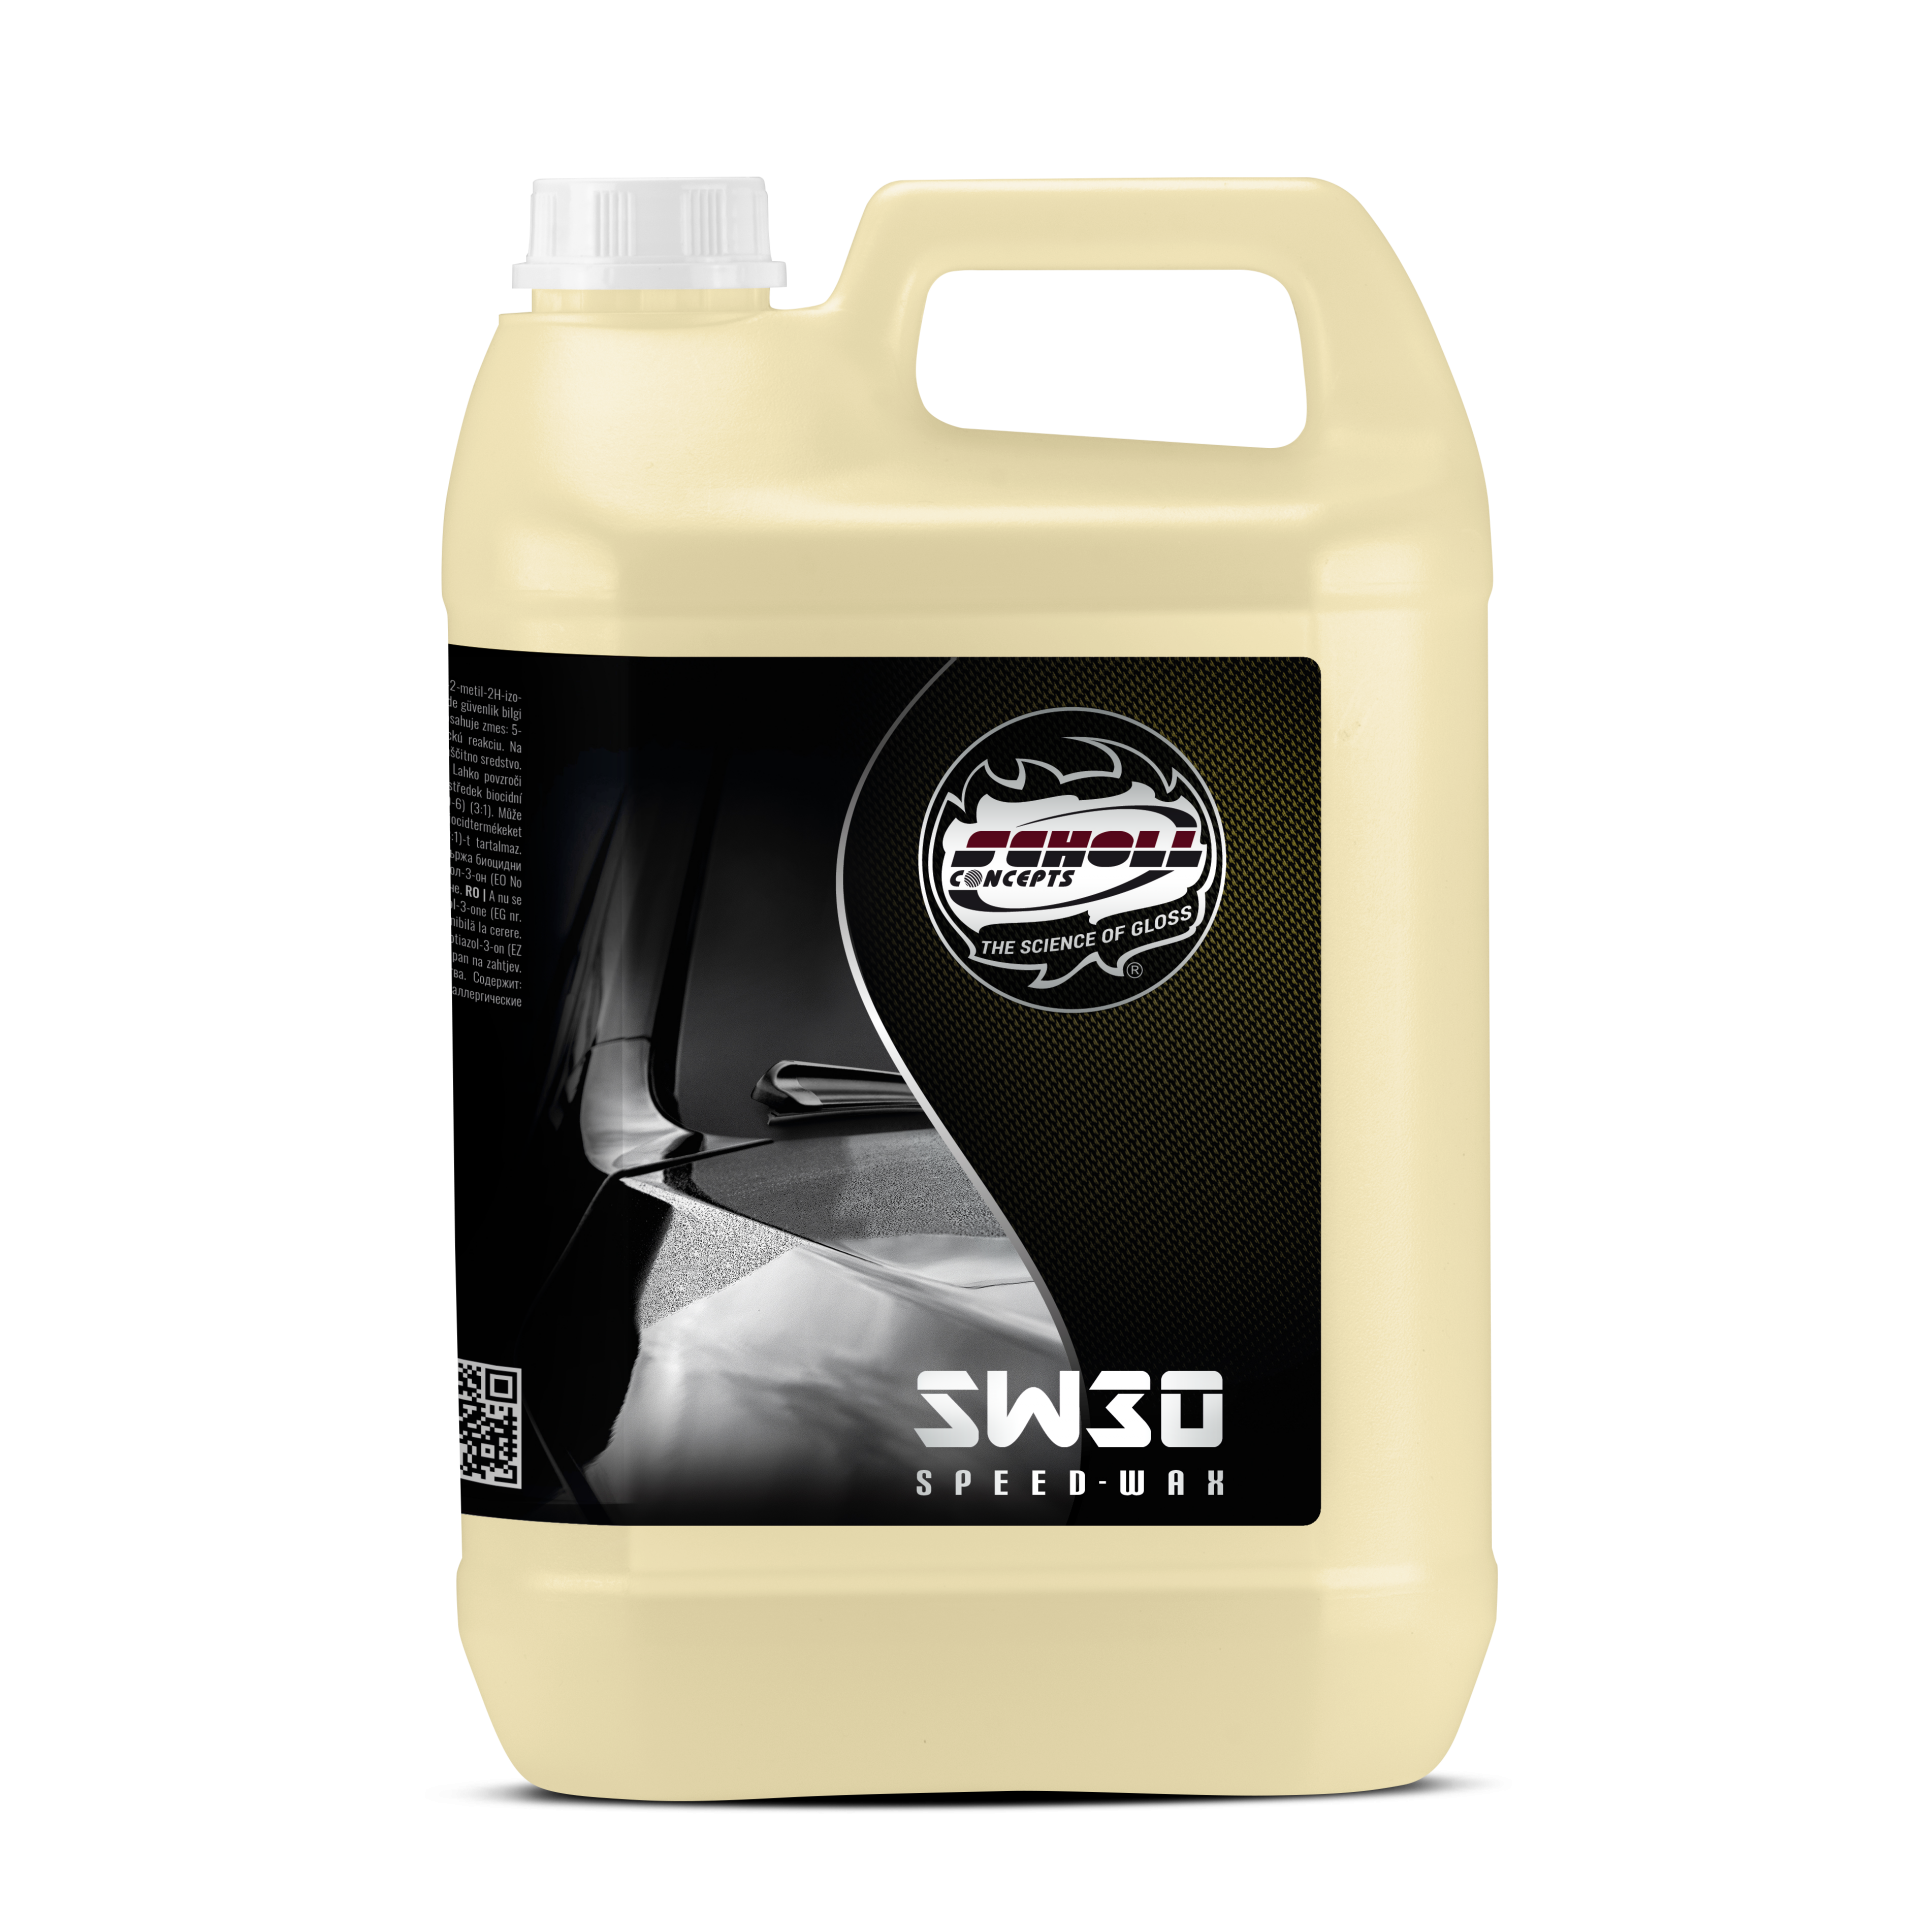 Scholl Concepts SW30 Premium SuperGloss Speed Wax Speedwachs 5 Liter